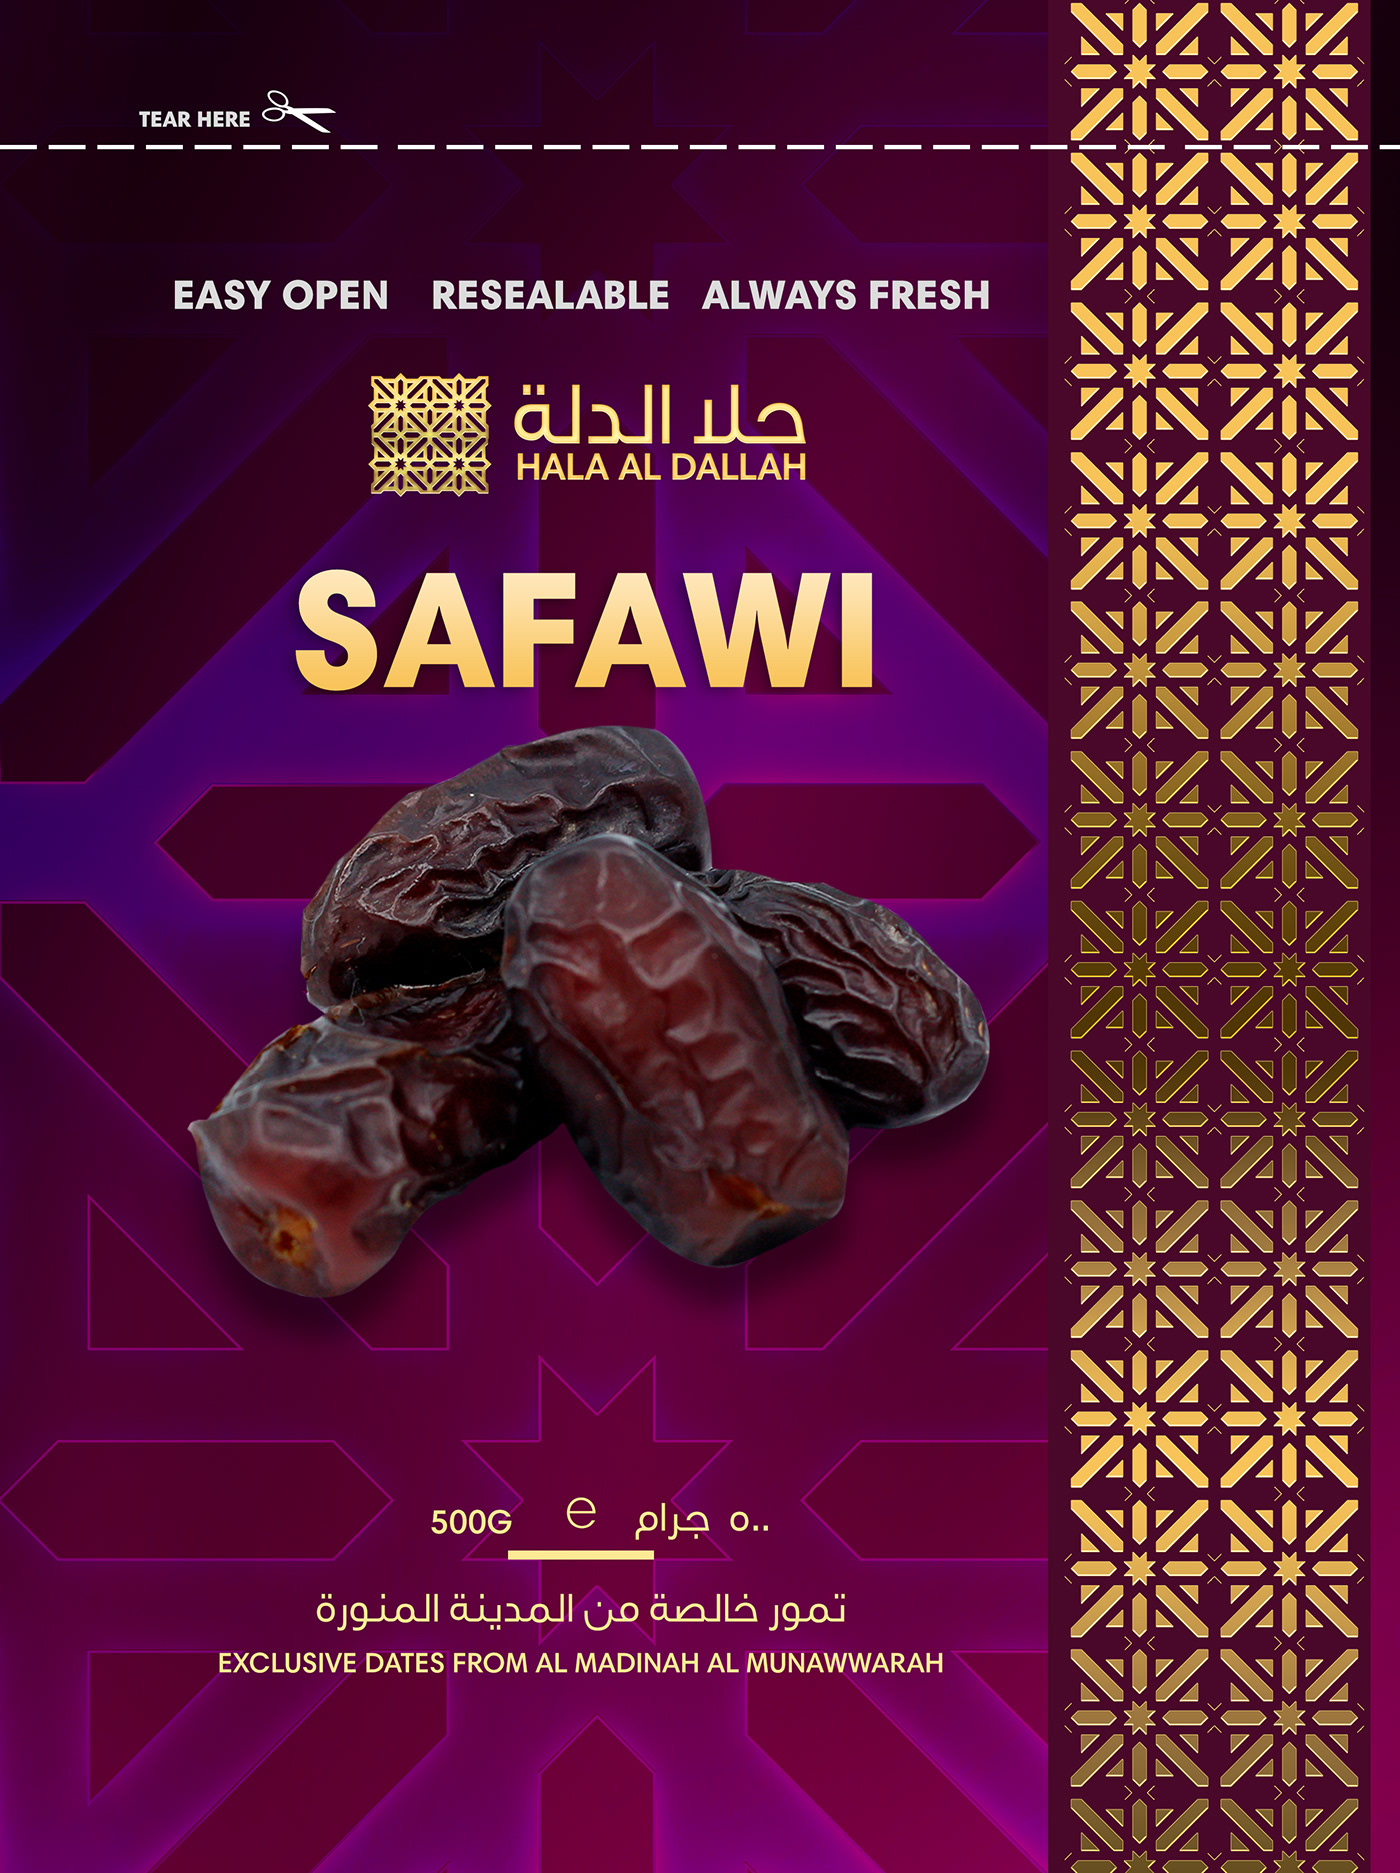 ajwa branding  dates Hala Al Dallah Packaging packaging design Premium Dates product design  Saudi Dates sukkari